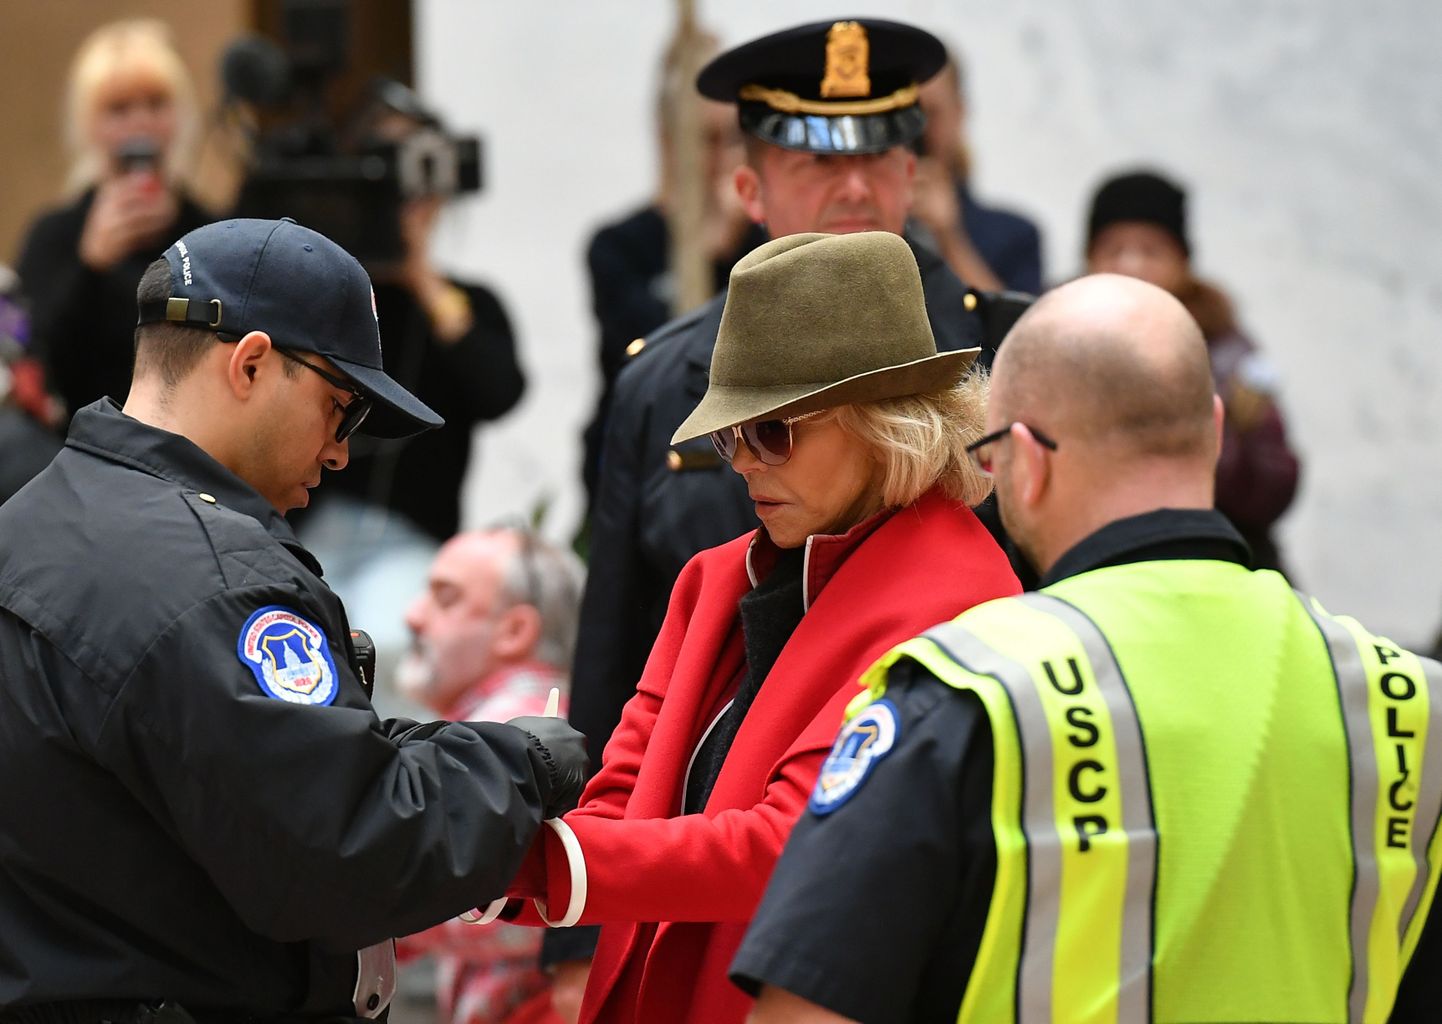 Kapitooliumi politsei võttis näitlejanna ja aktivisti Jane Fonda kinni osalemise eest kliimaprotestil senatihoones.